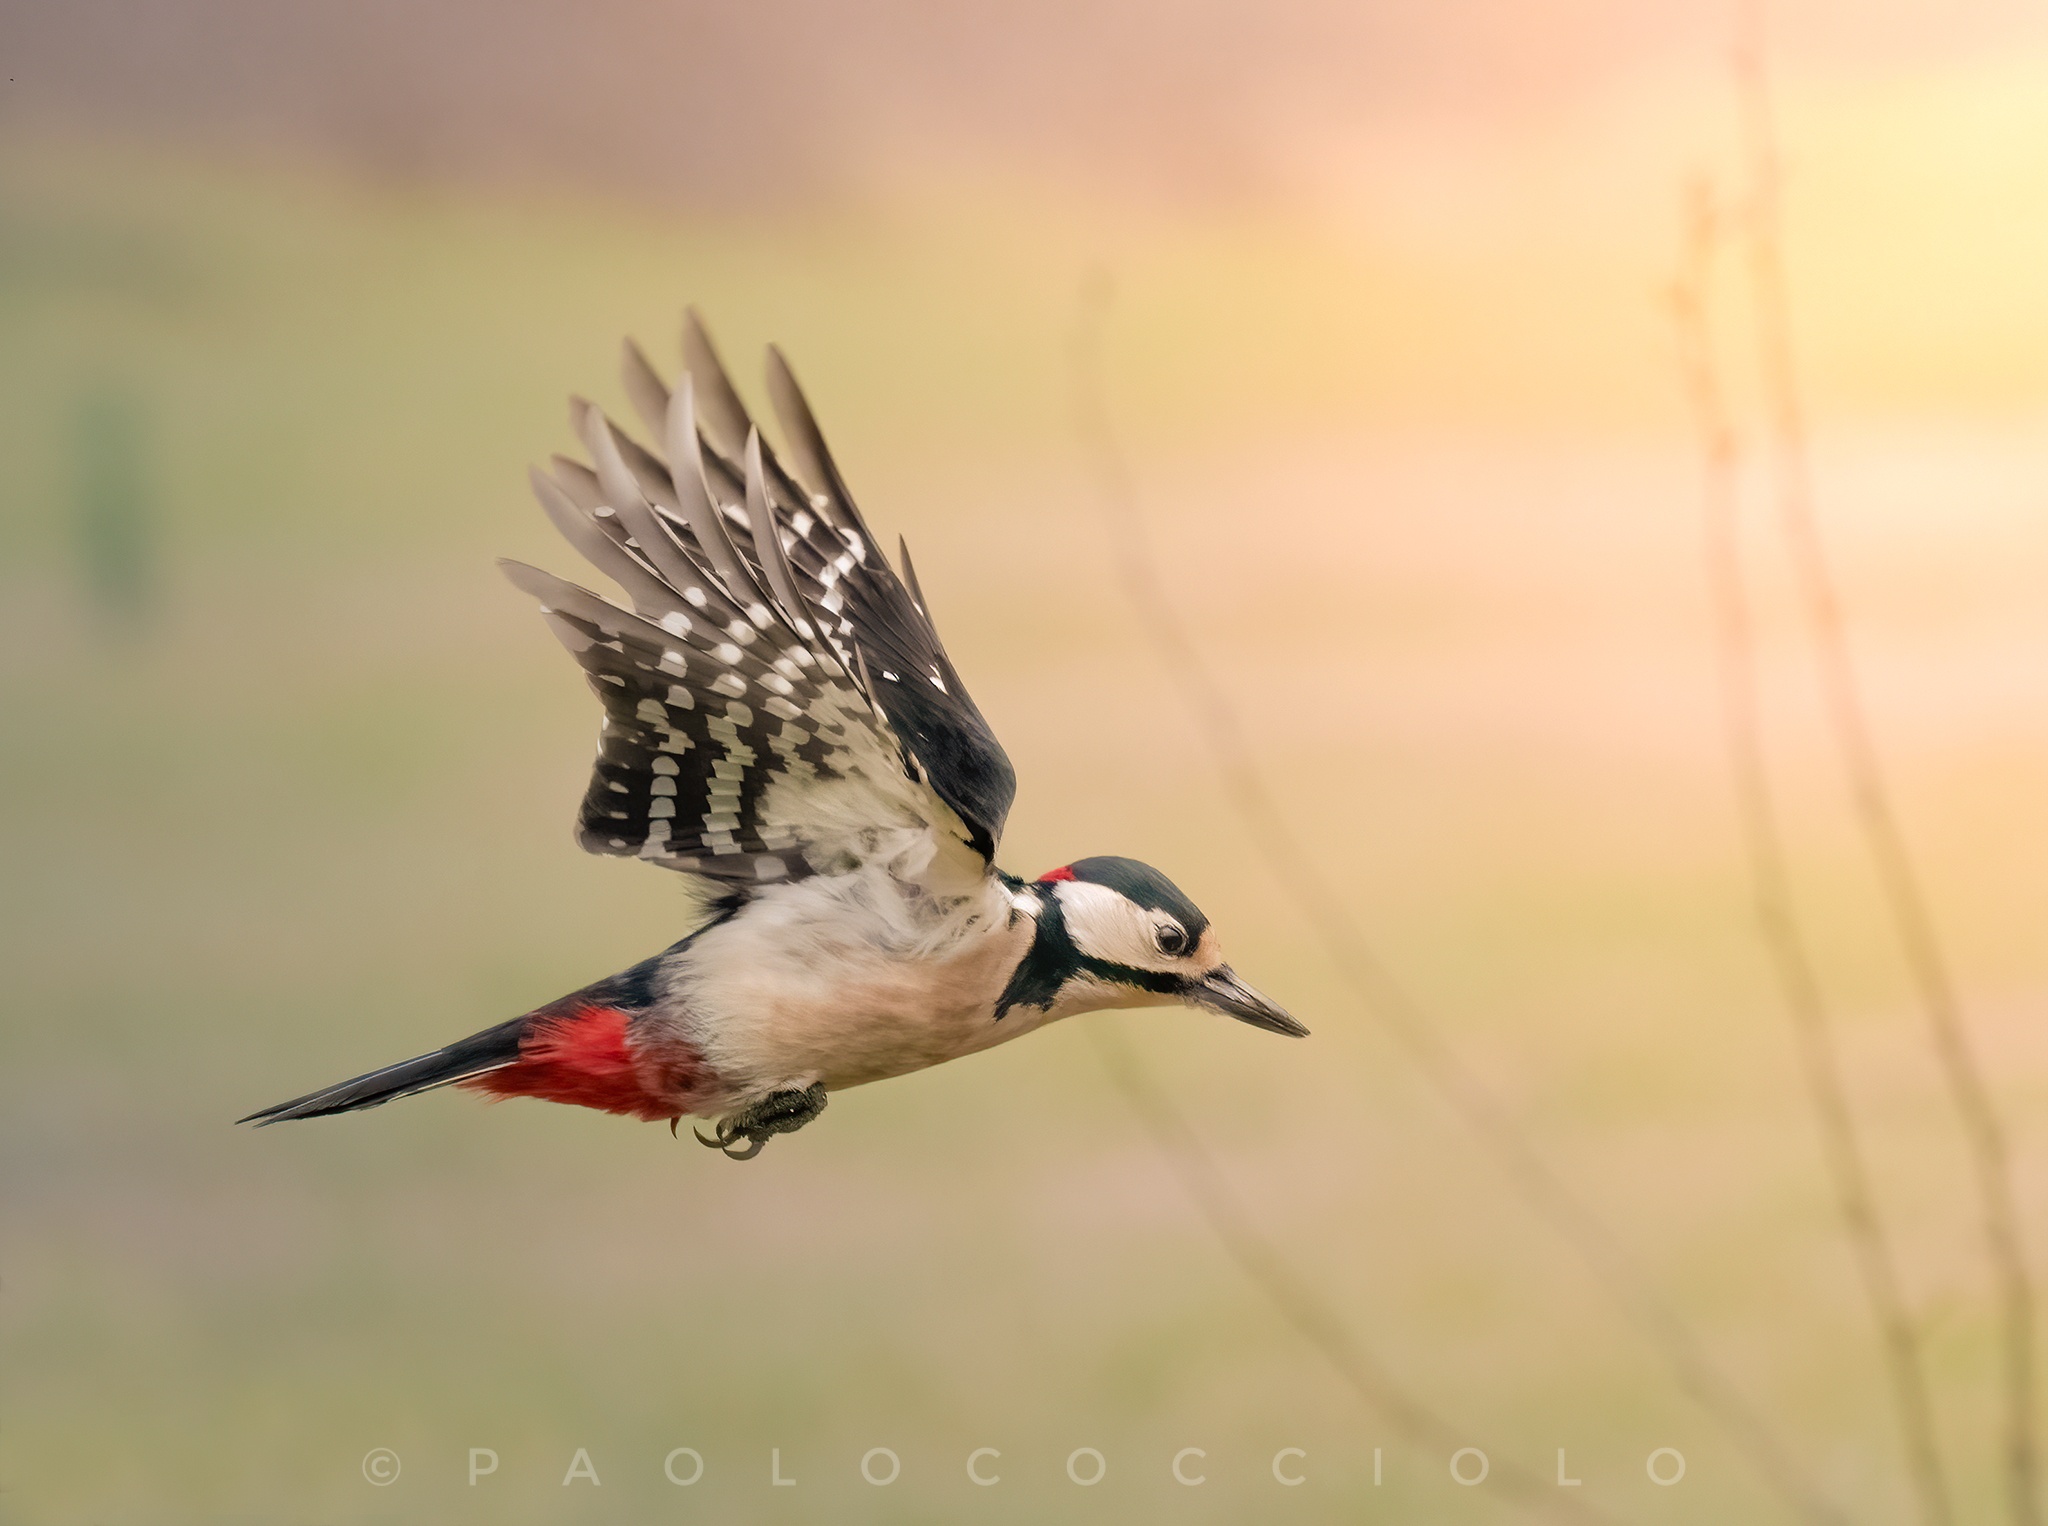 Major red woodpecker in flight...